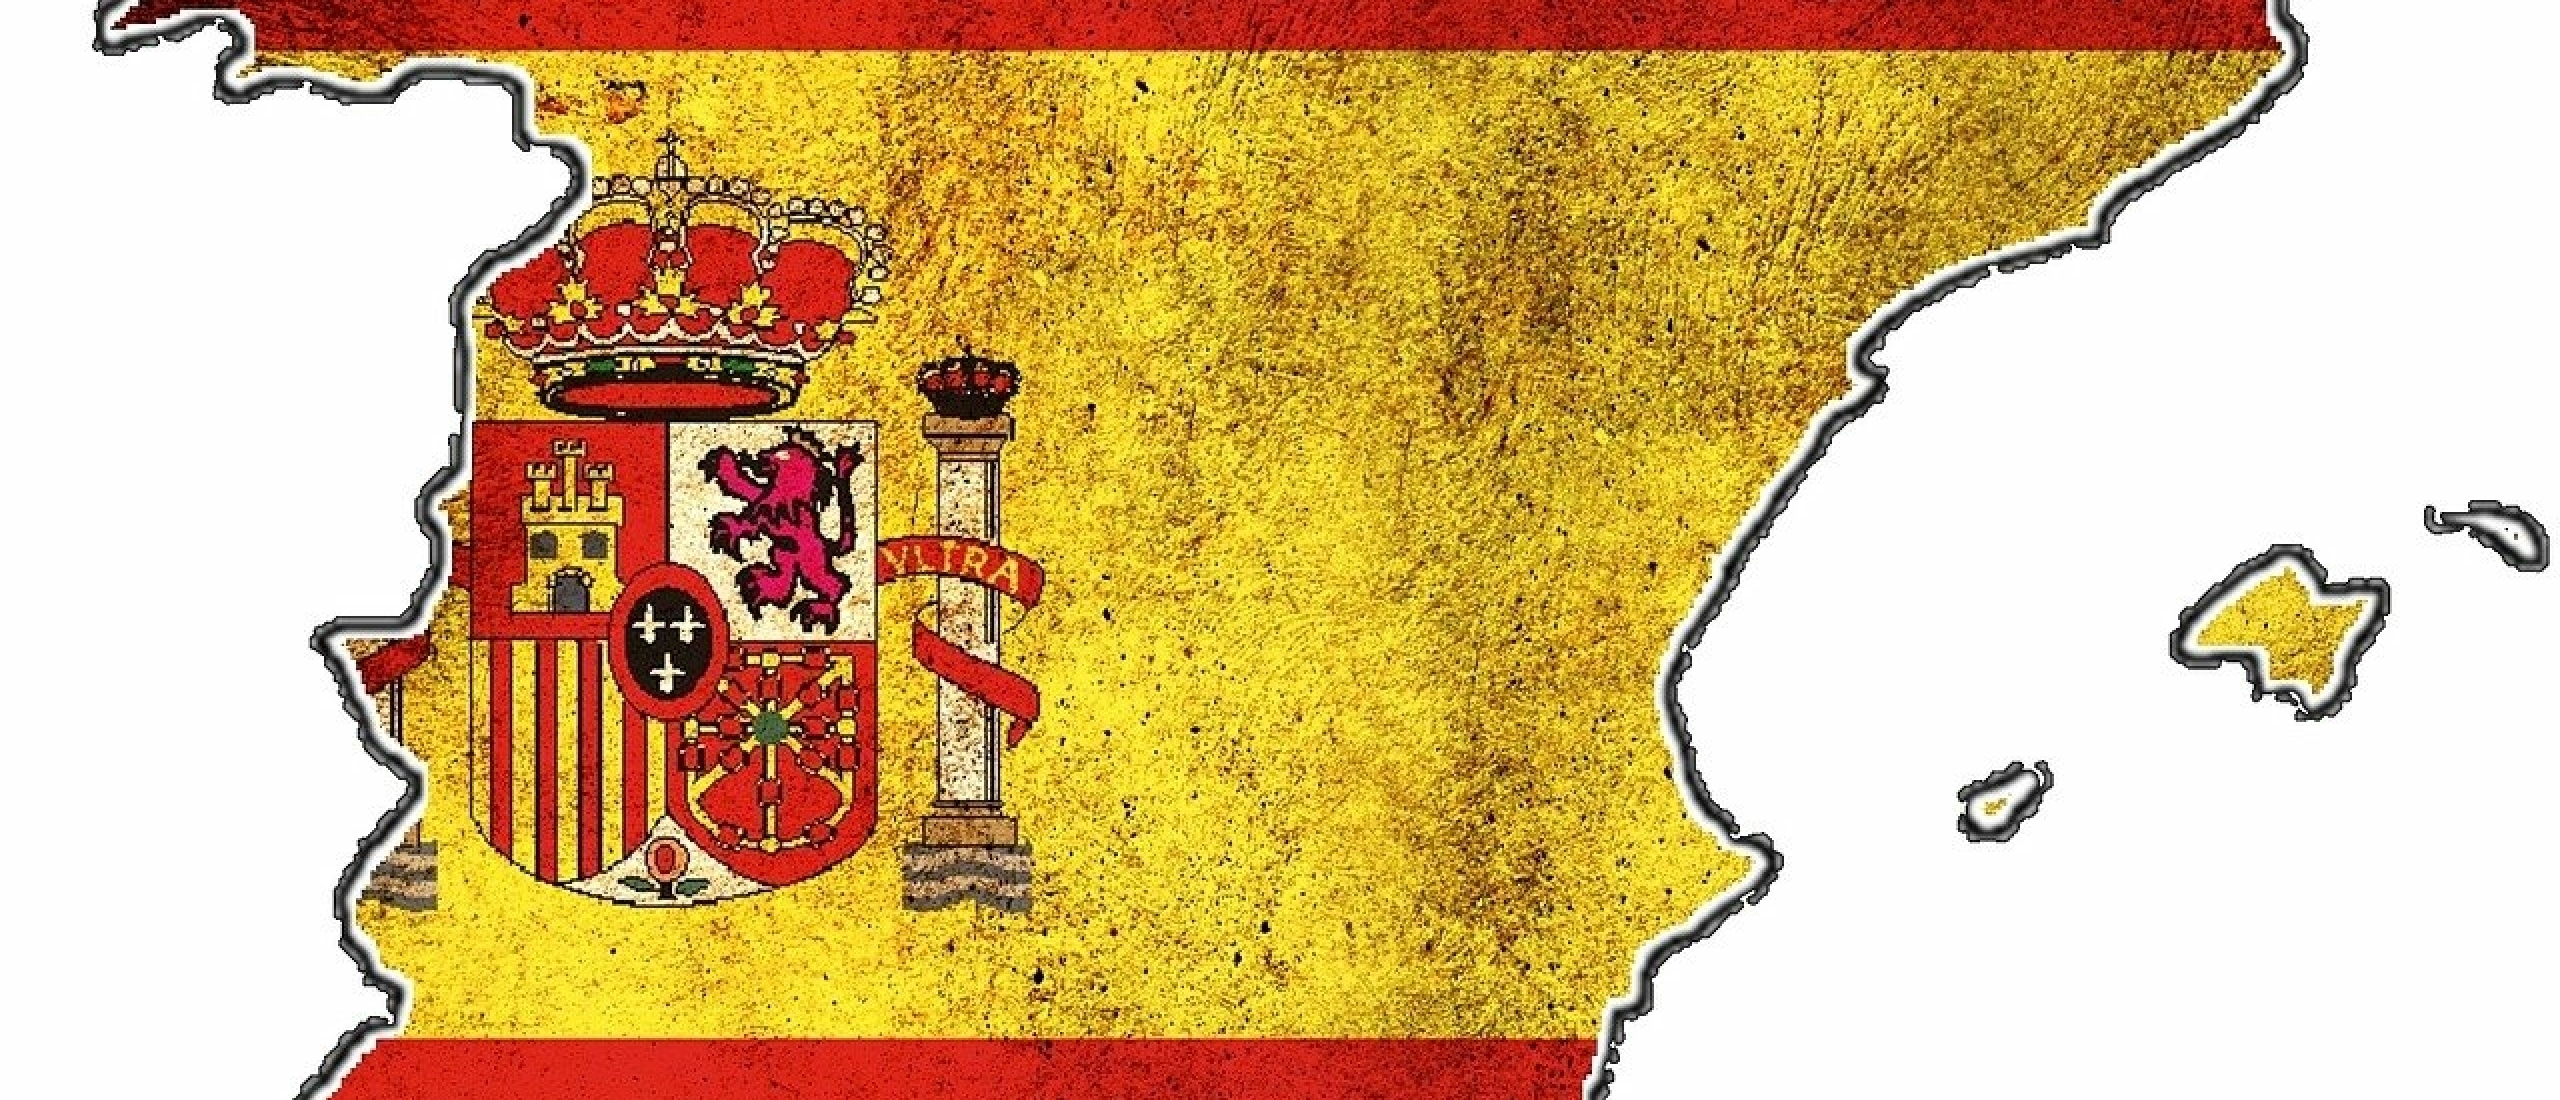 Spanje Vlag